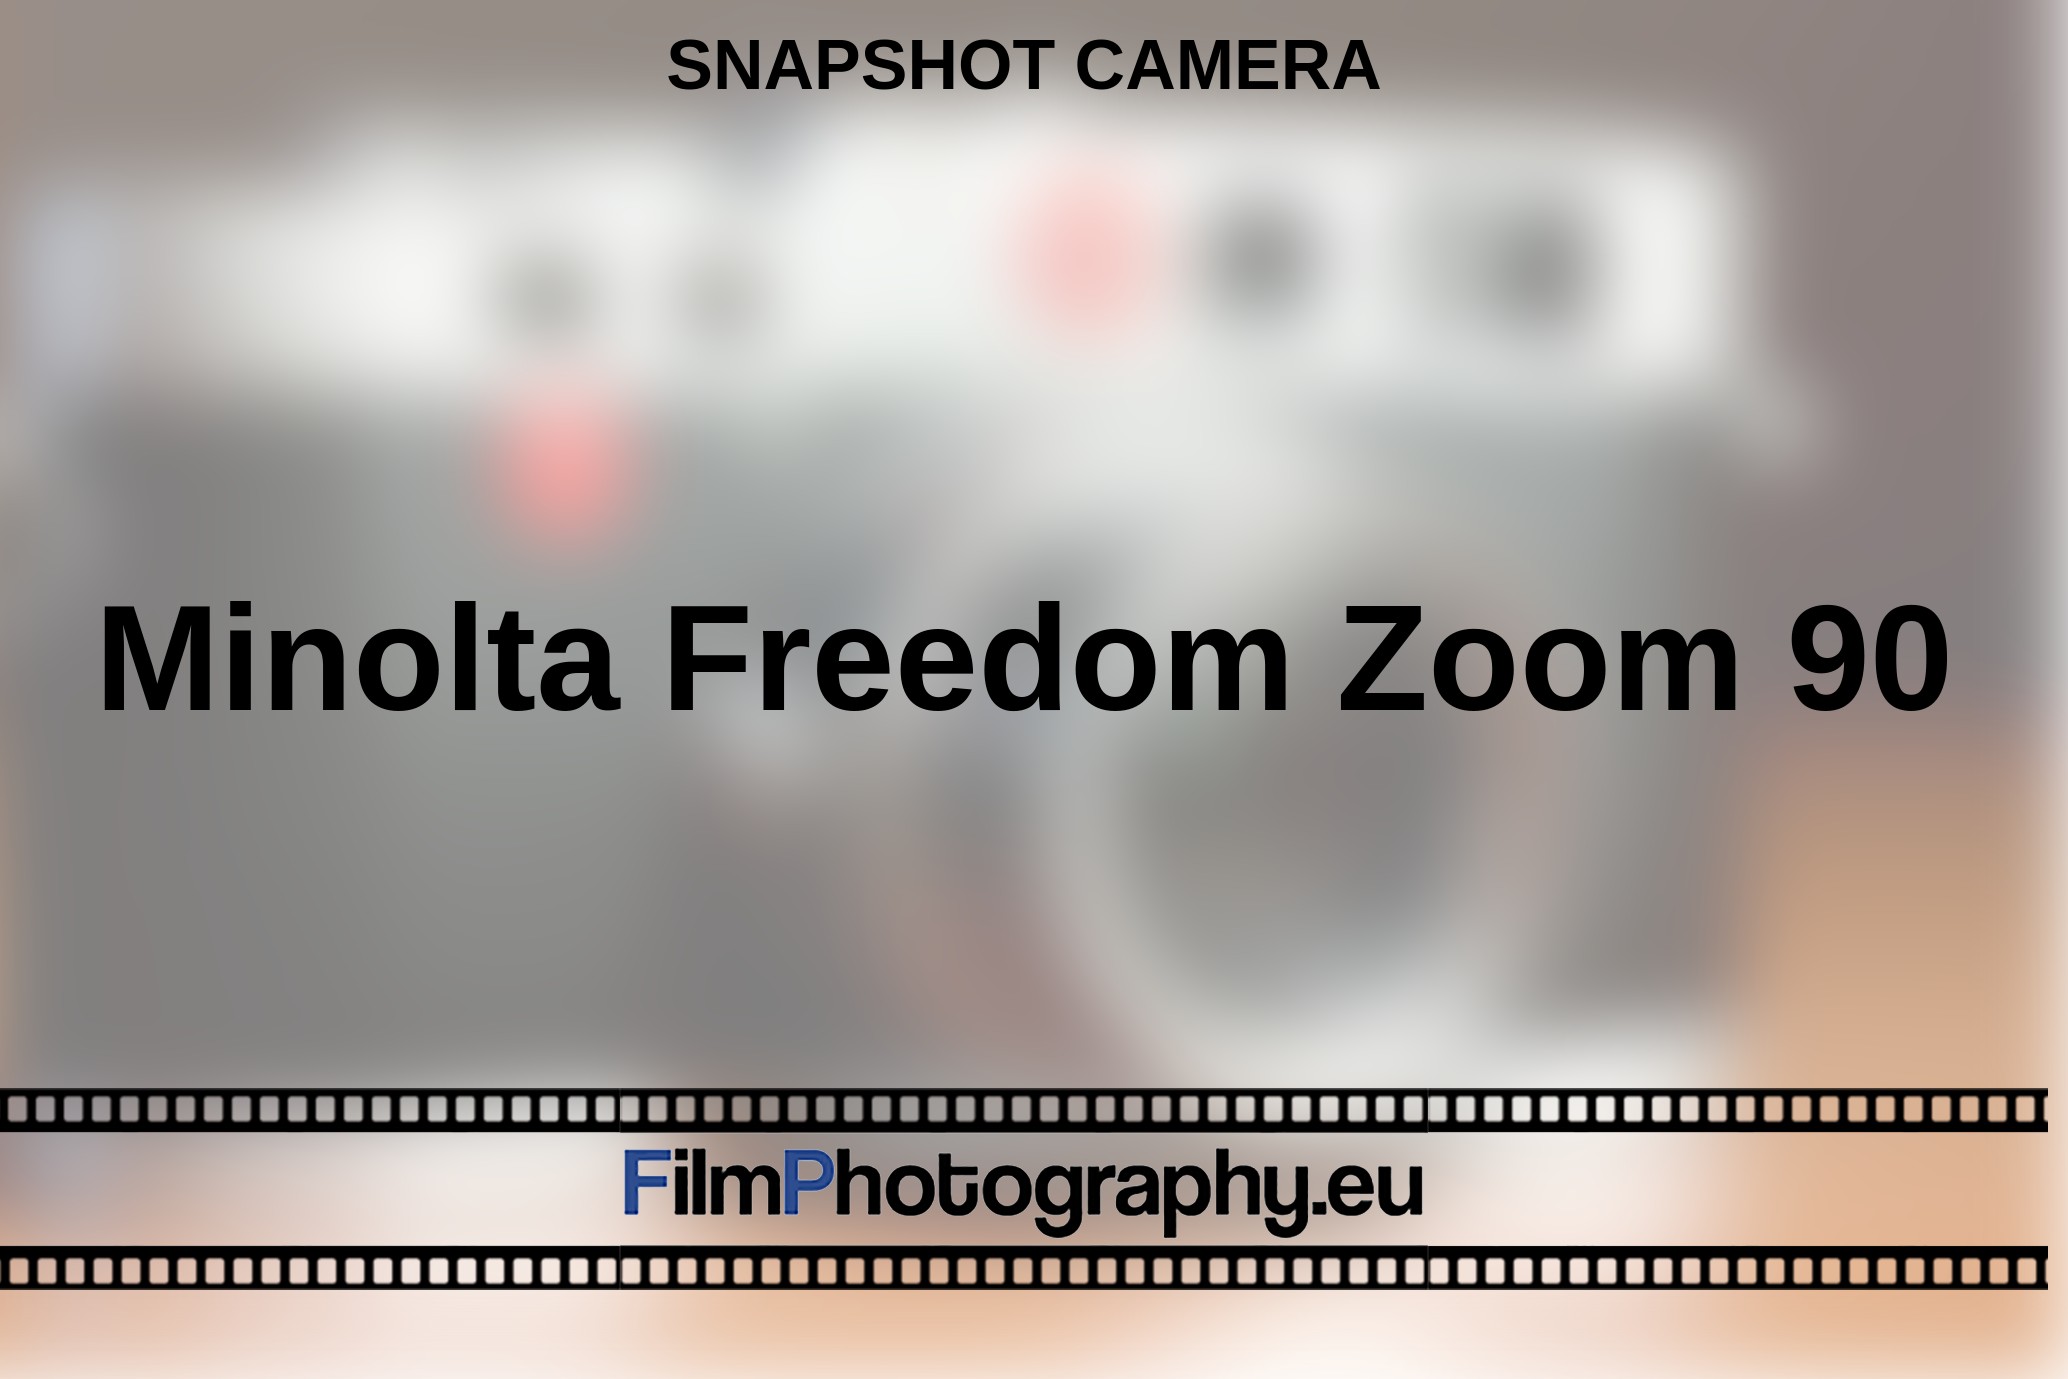 Minolta-Freedom-Zoom-90-snapshot-camera-bnv.jpg